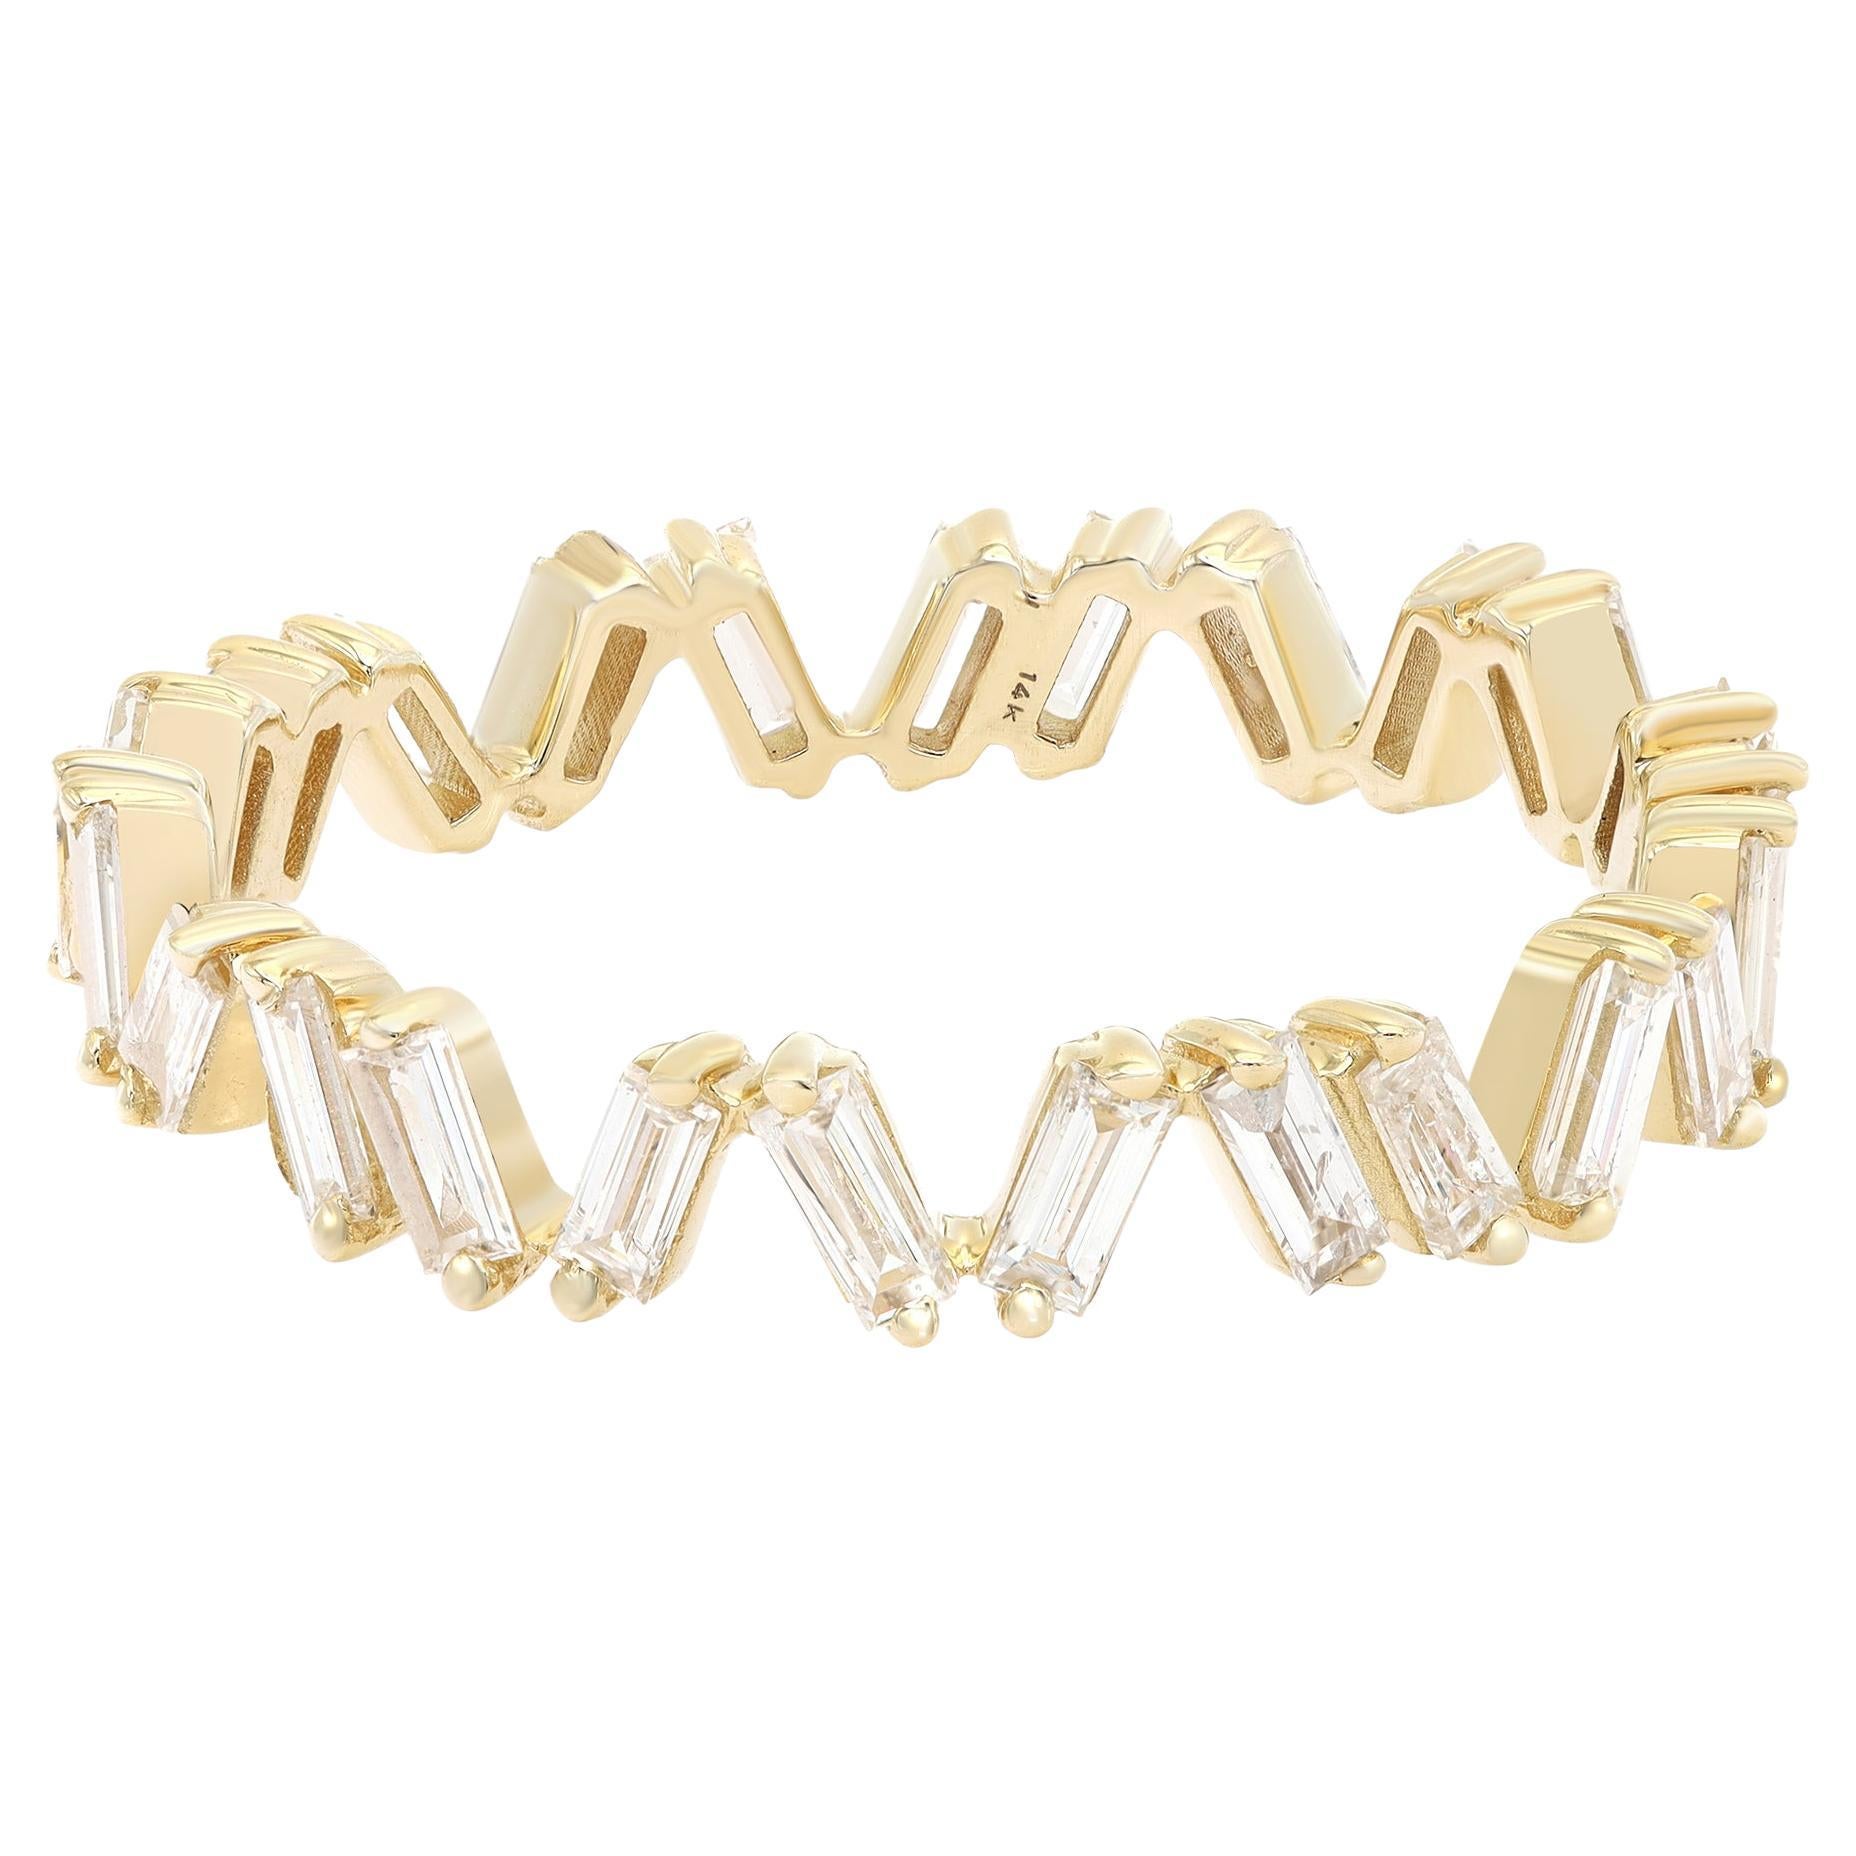 Rachel Koen Baguette Cut Diamond Ring Band 14k Yellow Gold 0.69Cttw Size 6.25